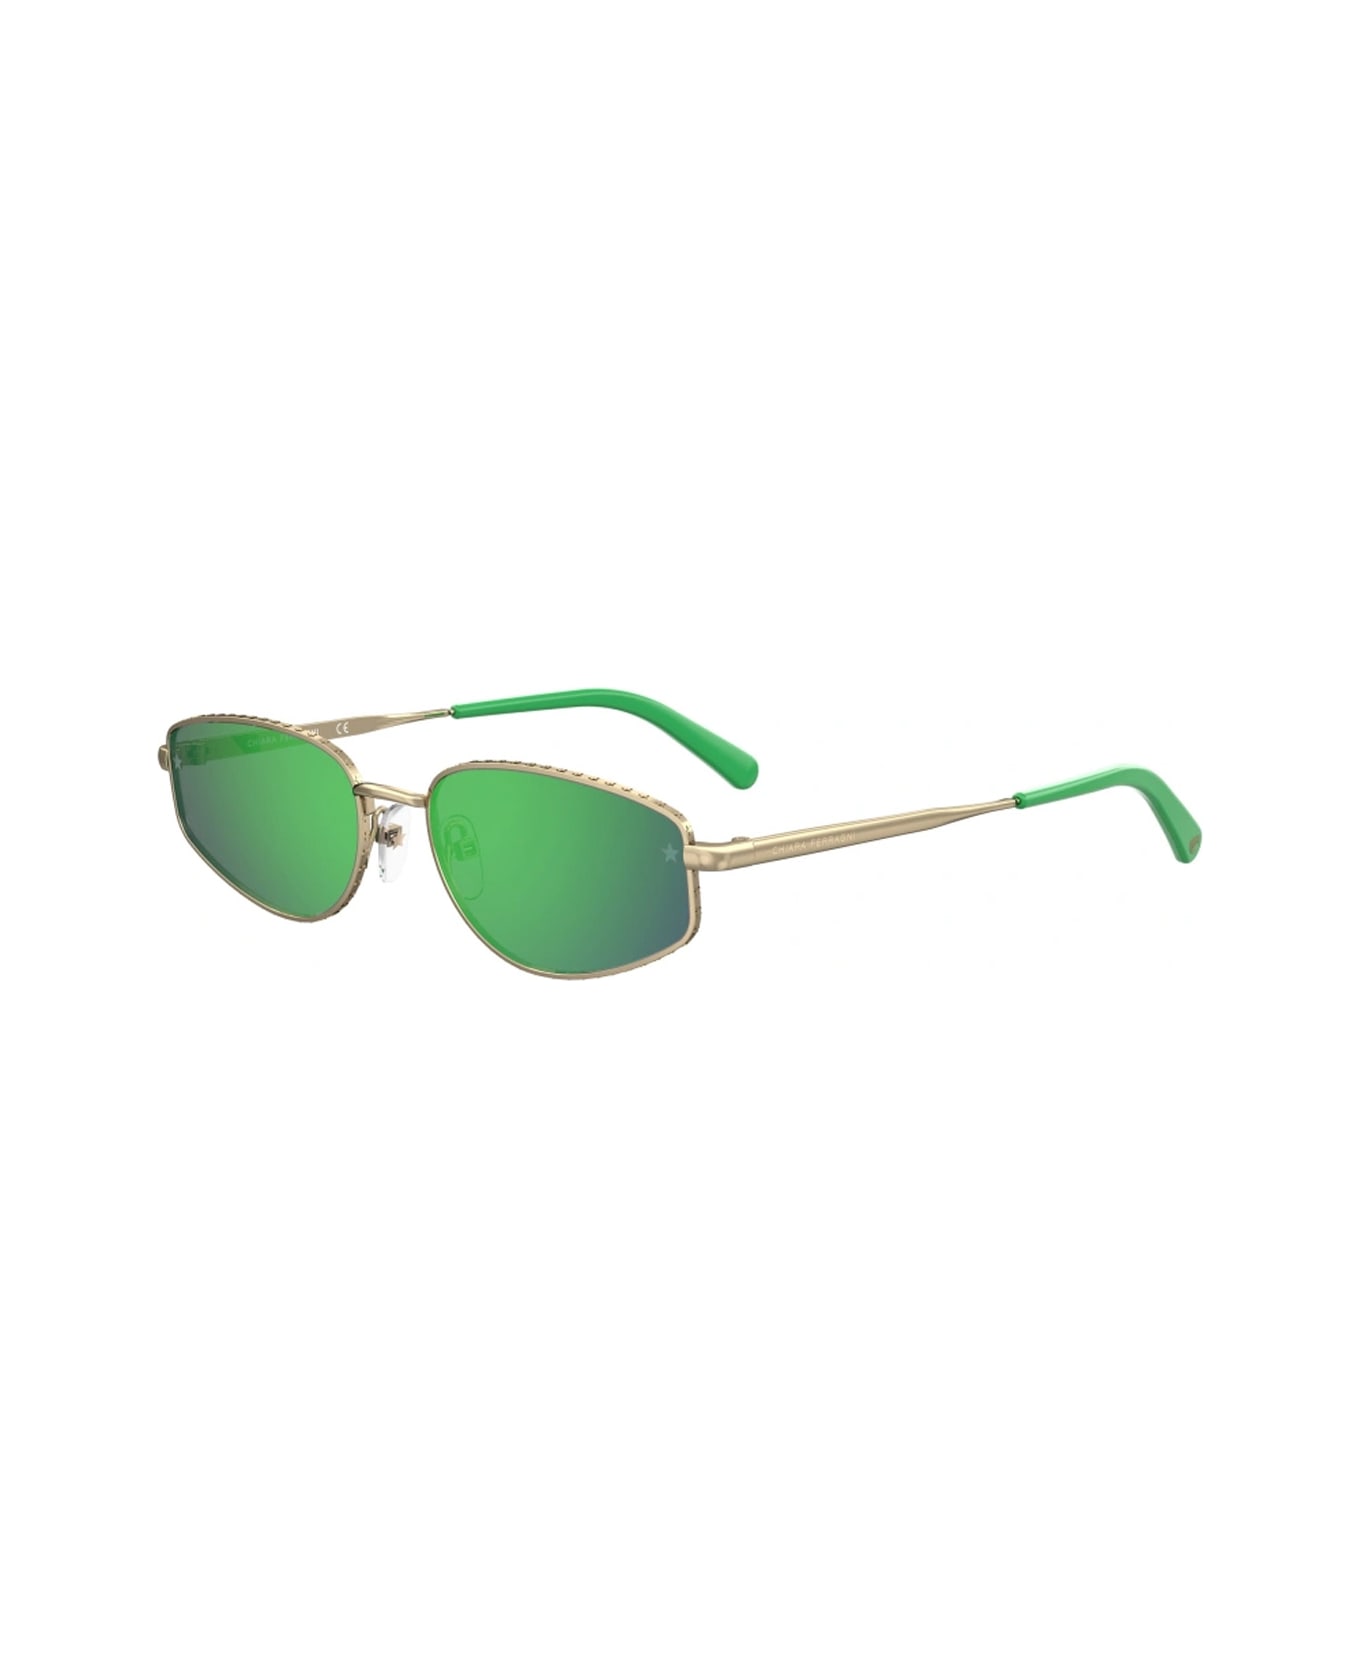 Chiara Ferragni Cf 7025/s Pef/z9 Gold Green Sunglasses - Oro